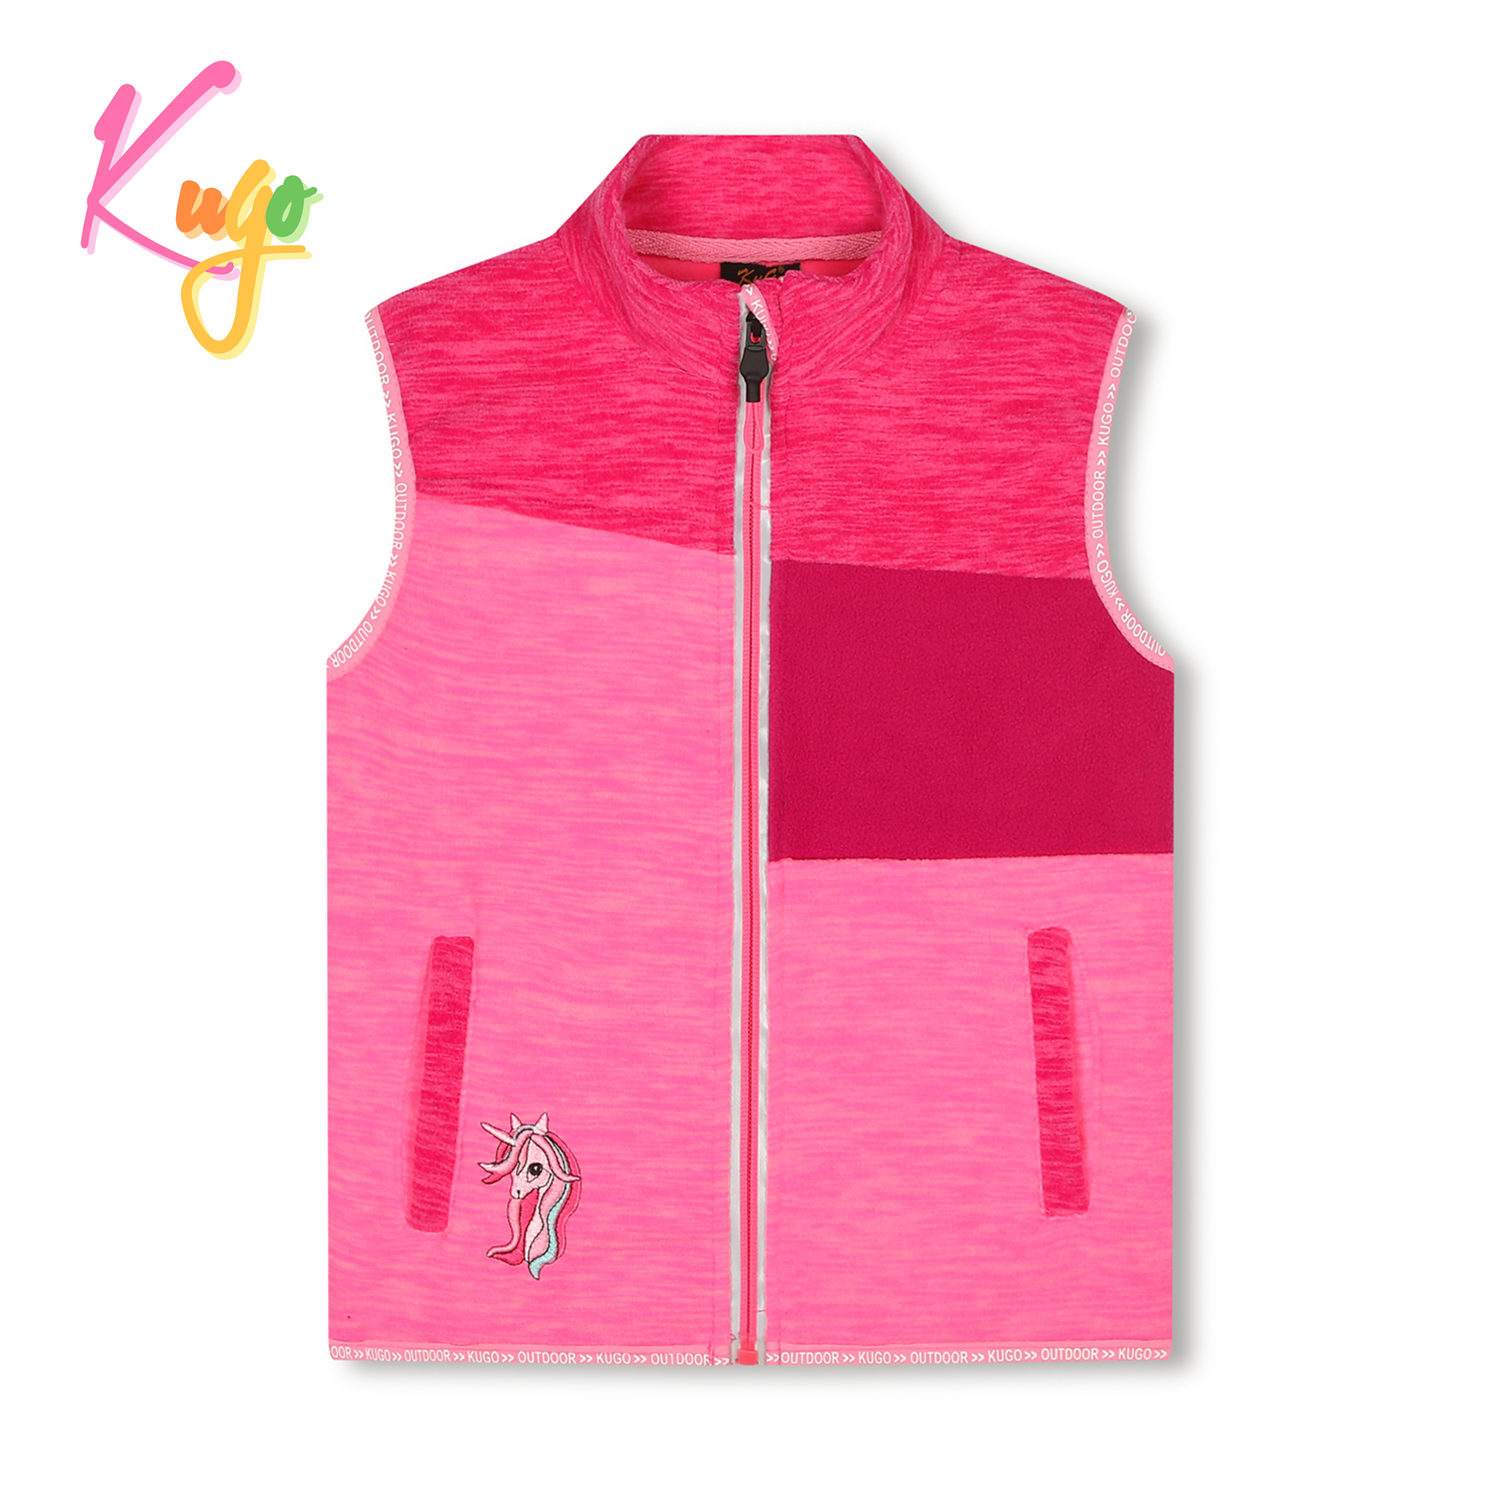 Dívčí flísová vesta- KUGO FM8789, růžová Barva: Růžová, Velikost: 104